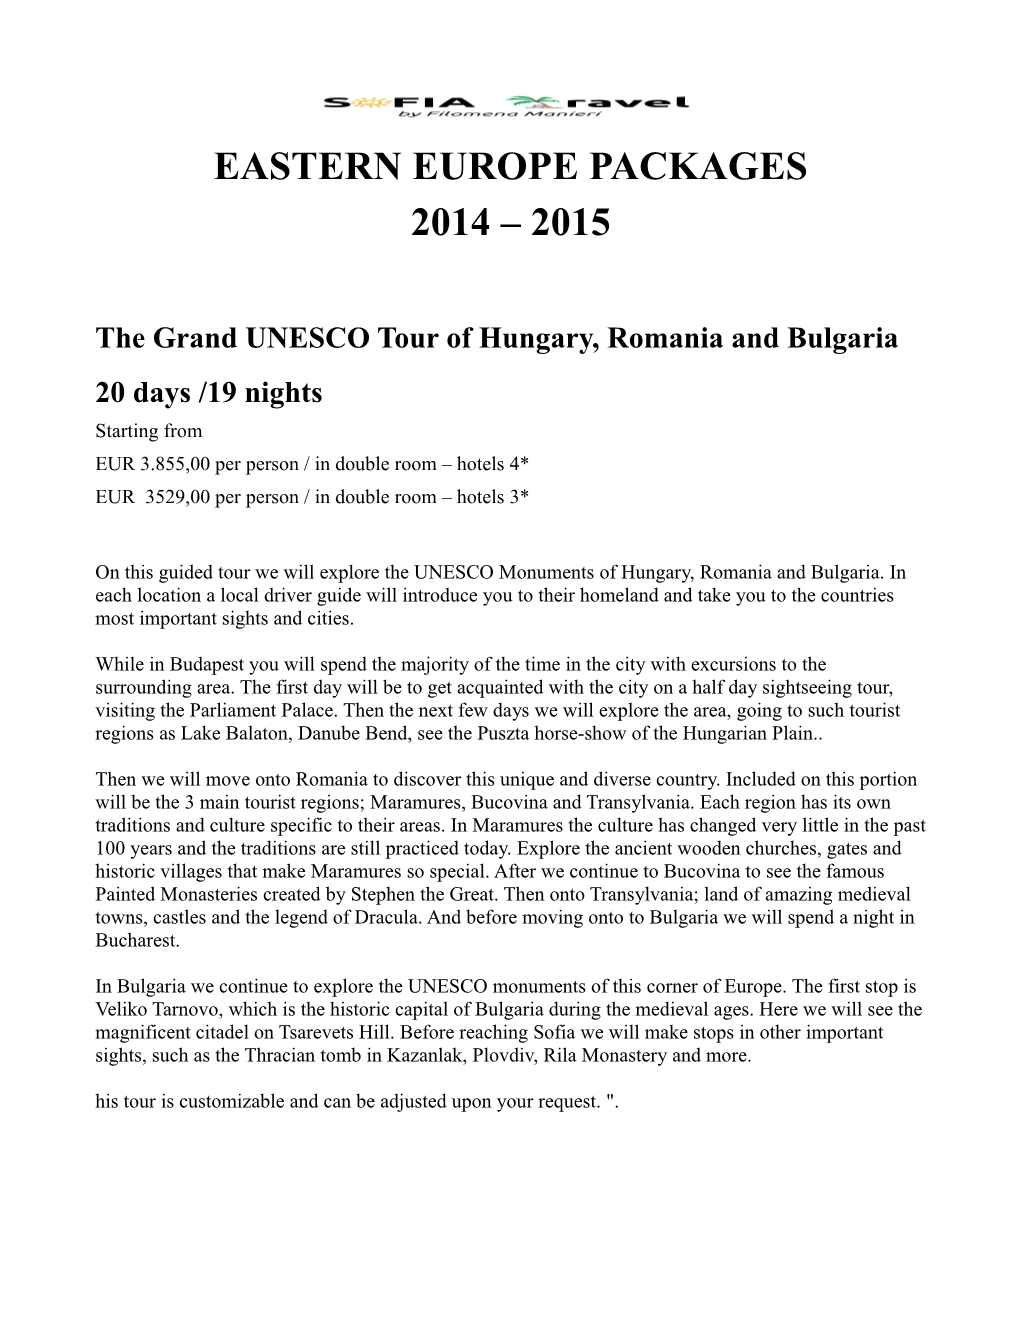 The Grand UNESCO Tour of Hungary, Romania and Bulgaria